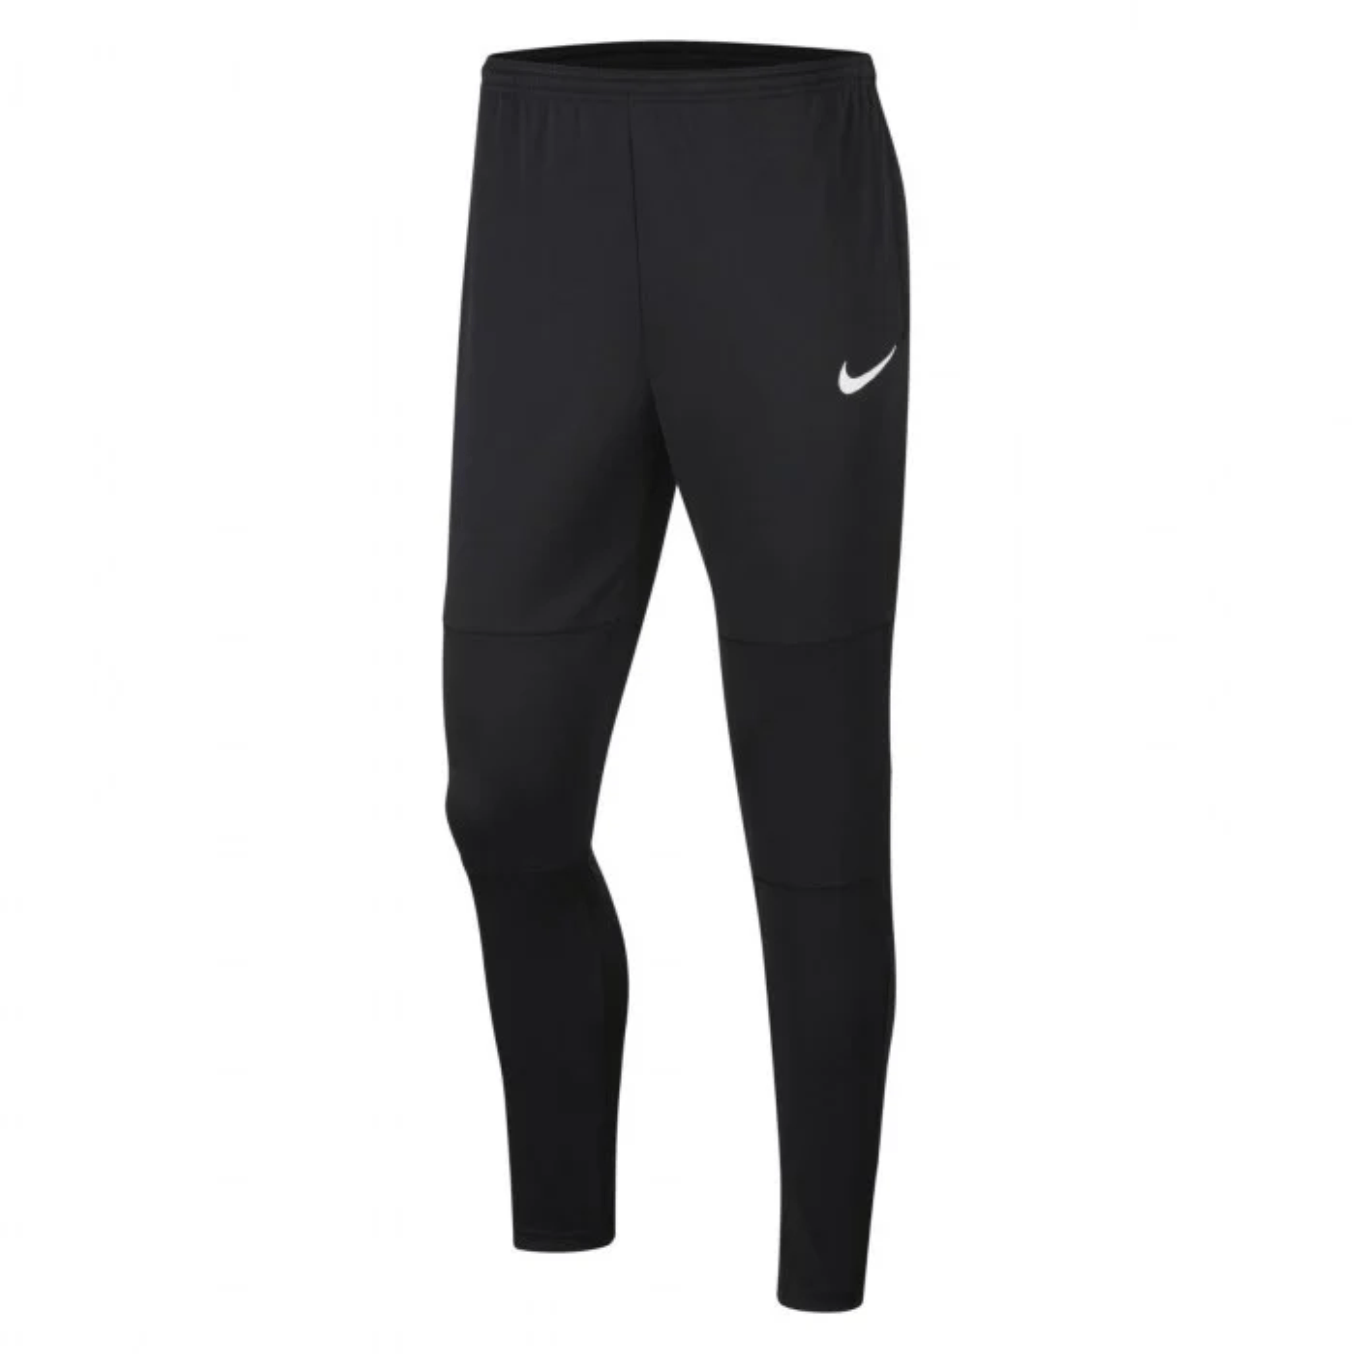 Chroma - Nike Tech Pants